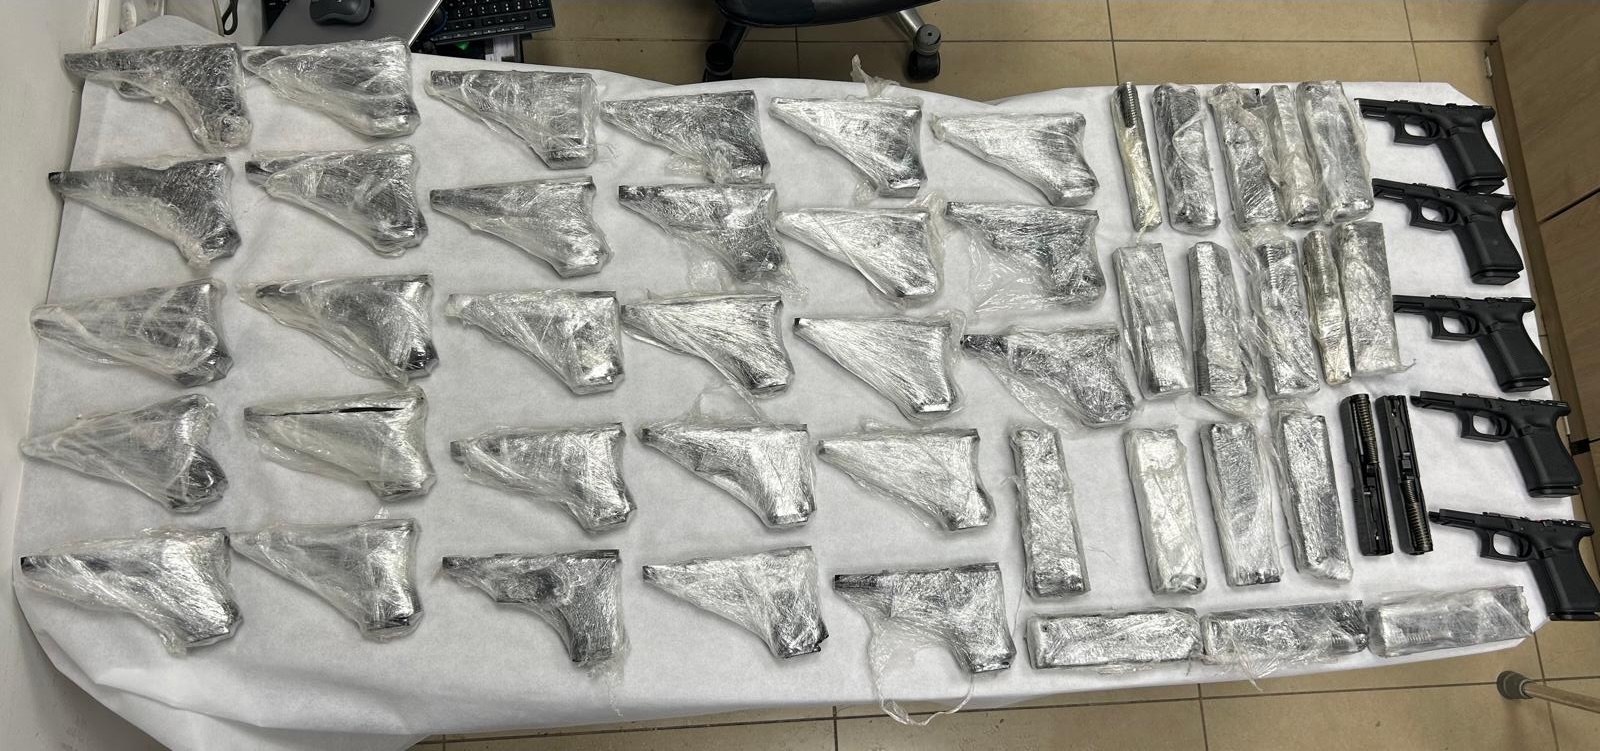 תיעוד: נתפסו עשרות אקדחים במעבר רבין